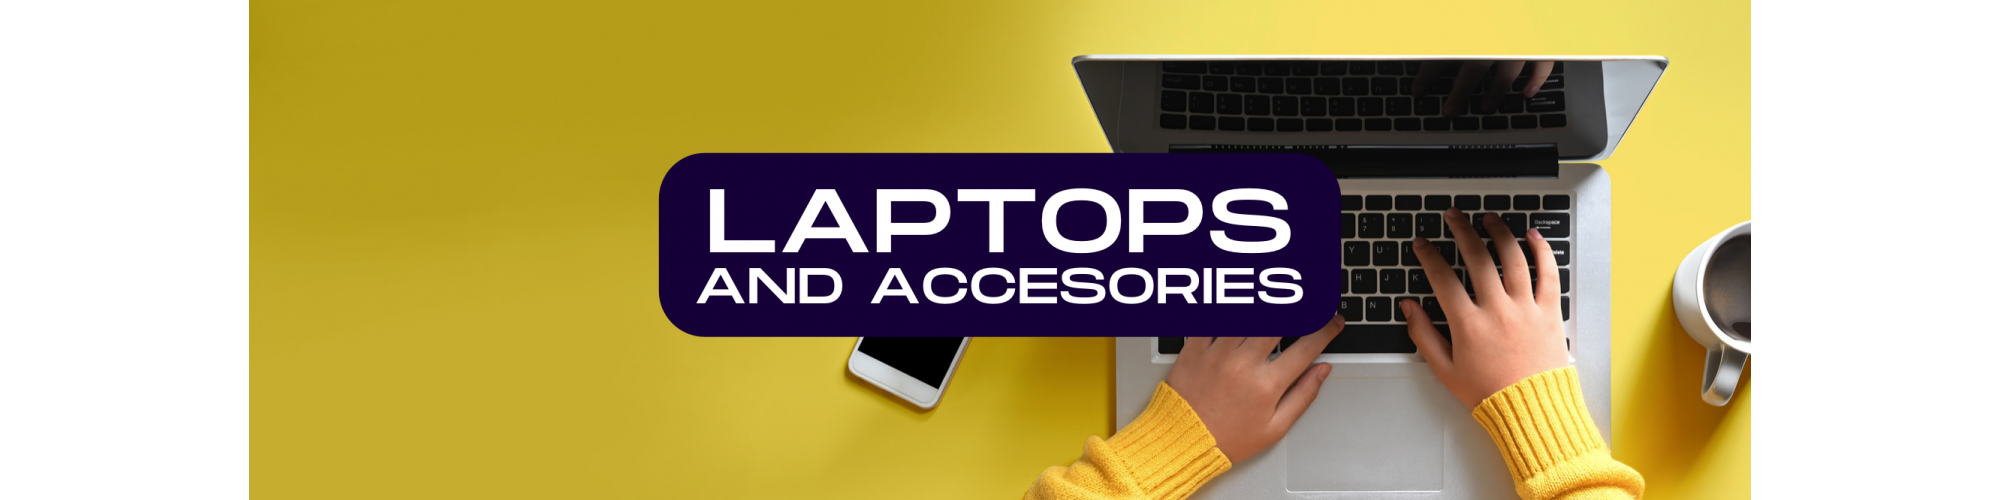 Laptops y accesorios